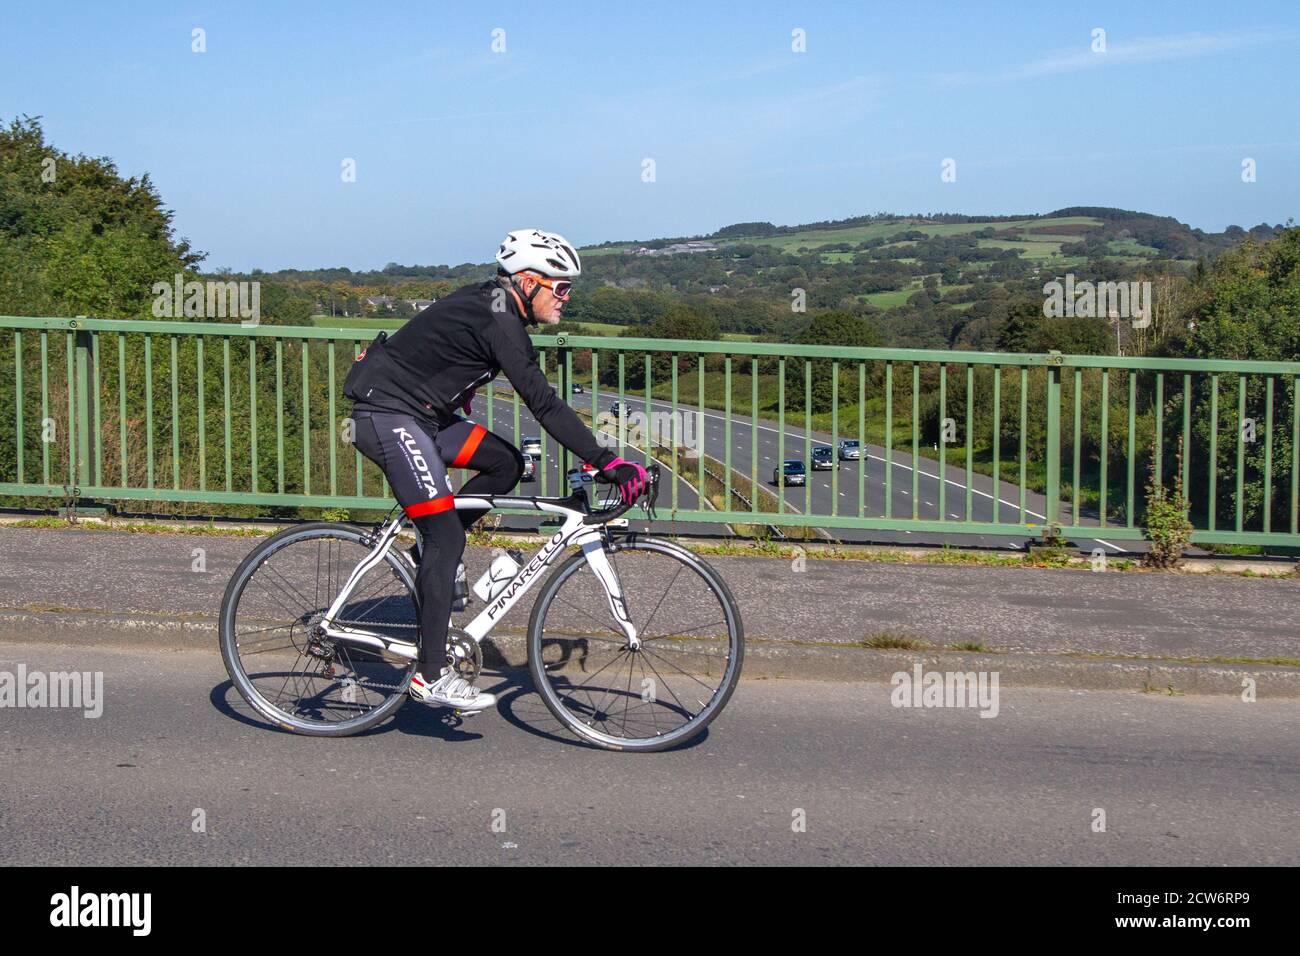 Hombre ciclista montar en blanco Pinarello Racing Bike razha Campagnolo  deportes bicicleta de carretera en el campo ruta de cruce puente de  autopista en la zona rural de Lancashire, Reino Unido Fotografía